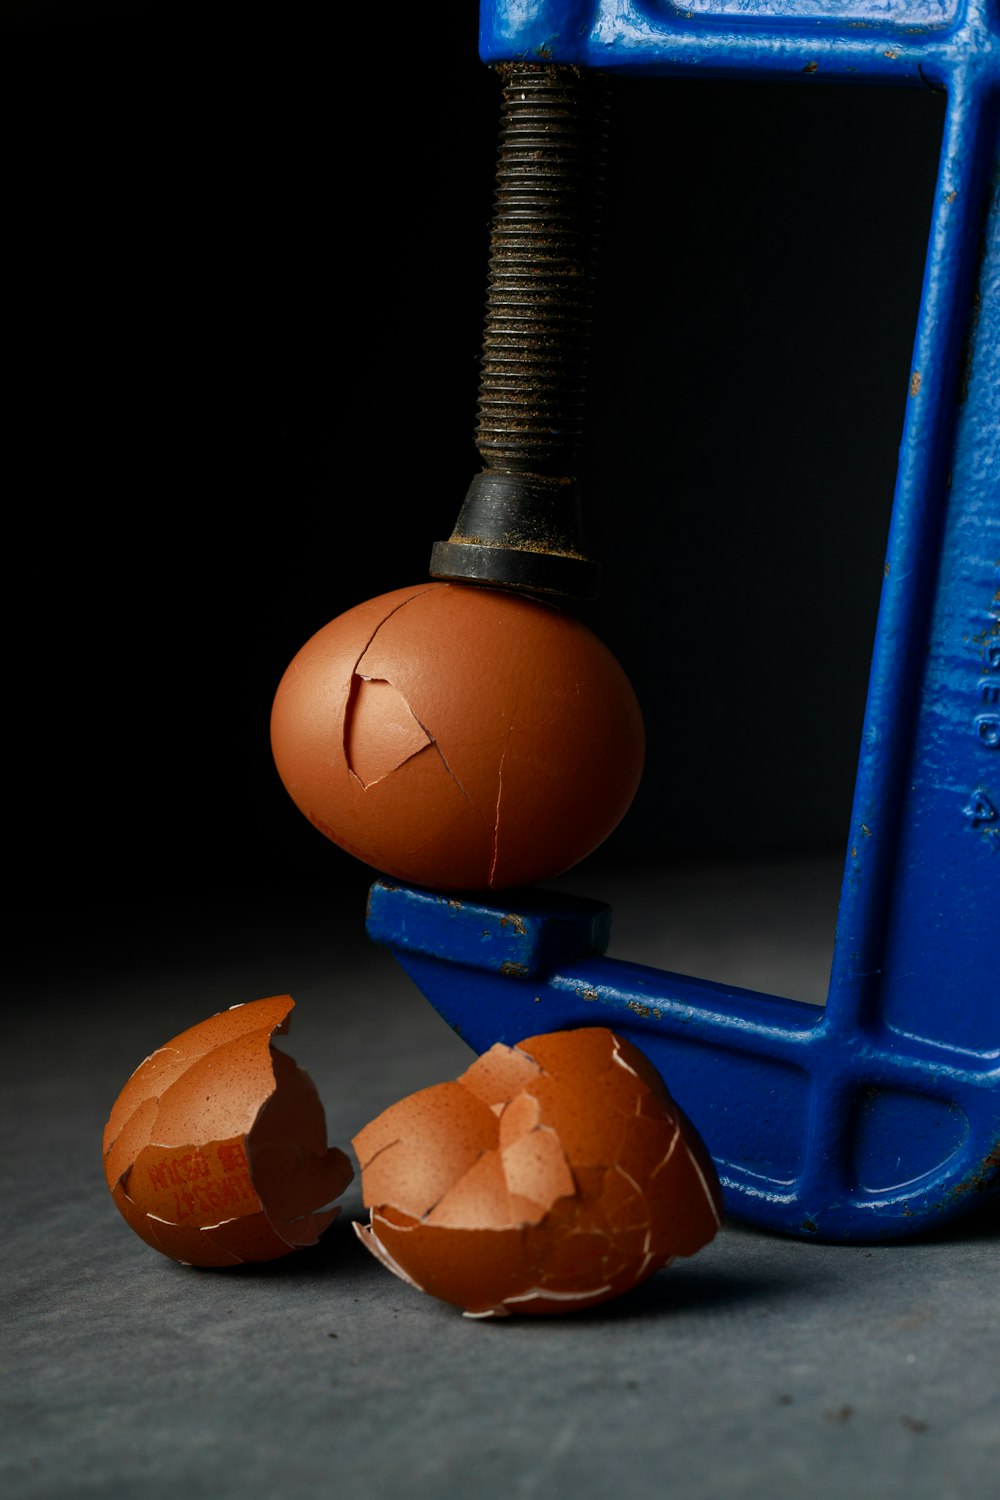 Un huevo roto sentado encima de un objeto azul